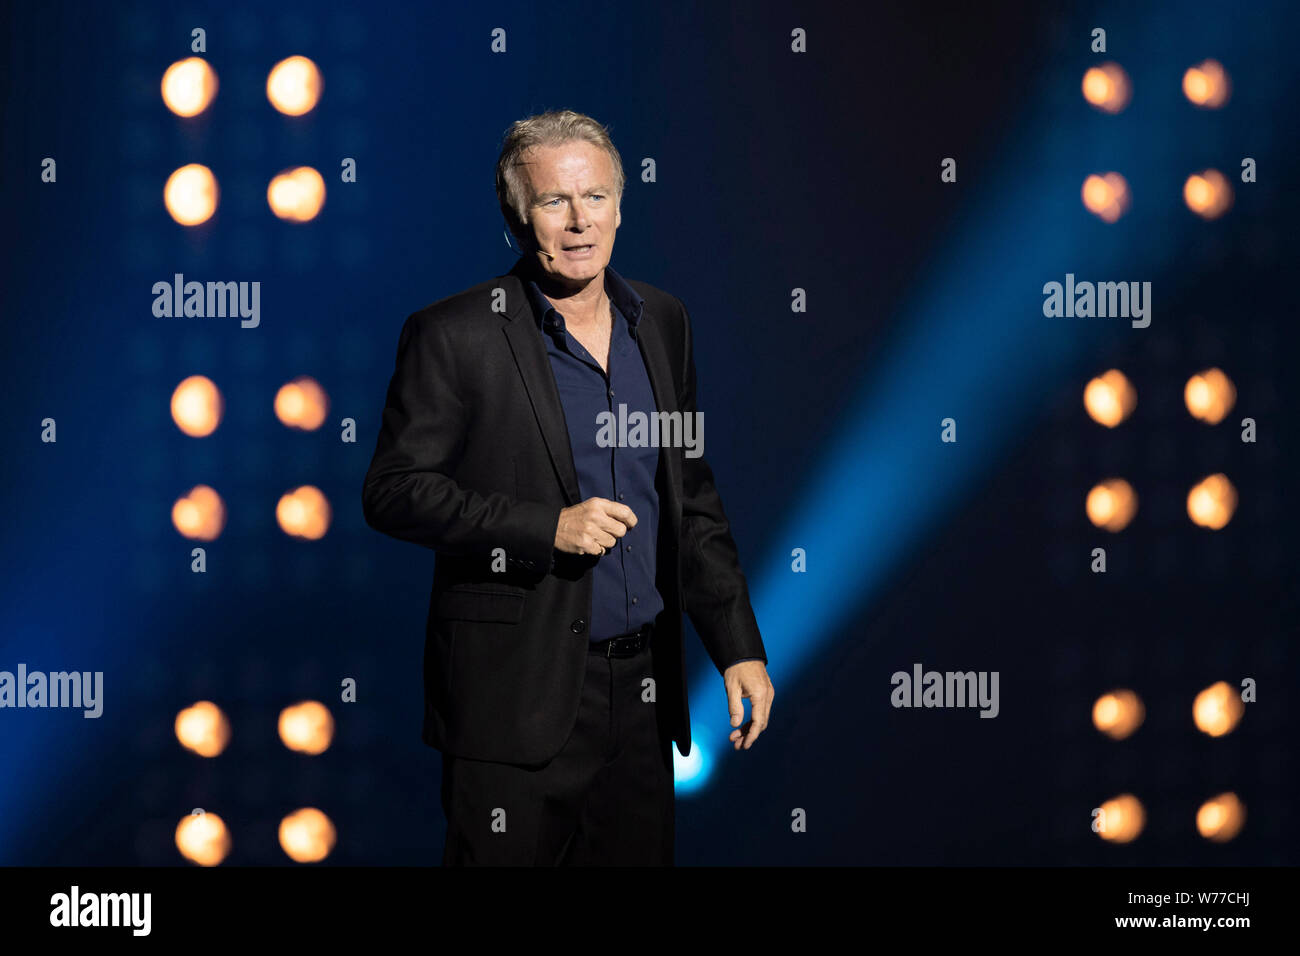 Humorist und Schauspieler Franck Dubosc auf der Bühne in Nizza am 2019/03/16, neue Show "Fifty Fifty" Stockfoto